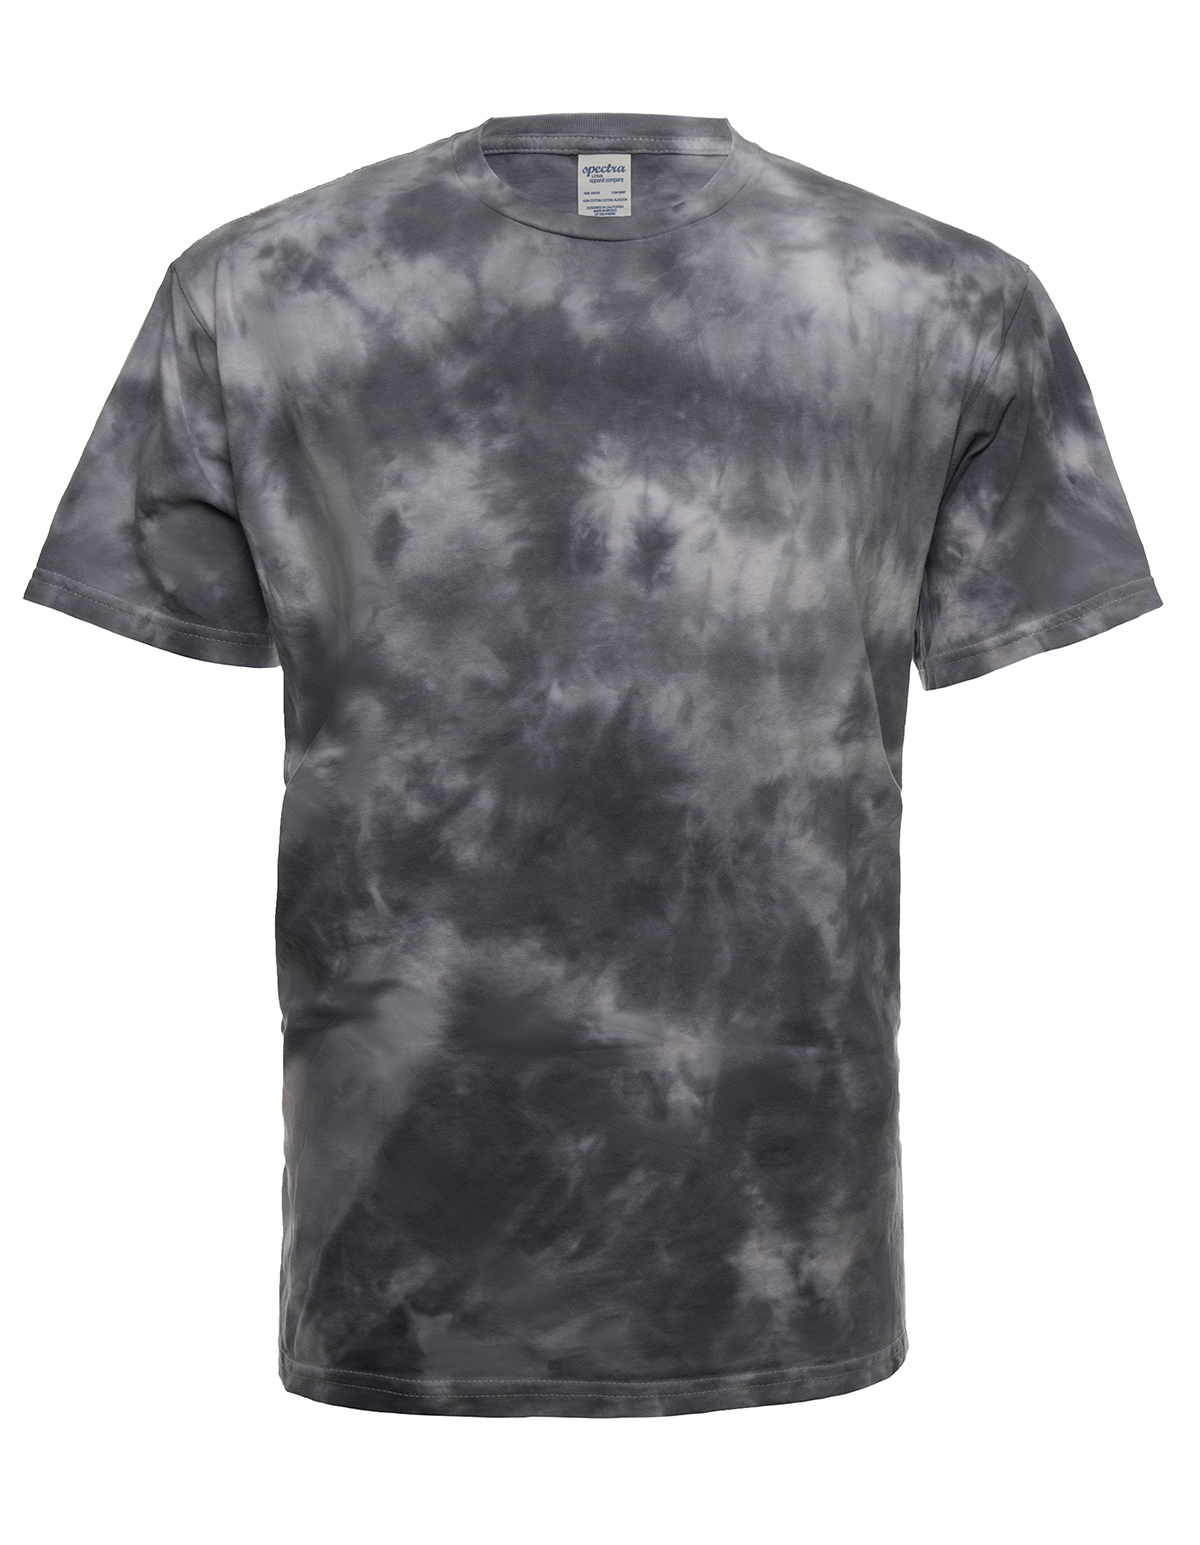 31 Cloud-Cloudwash Steel Front T-shirt